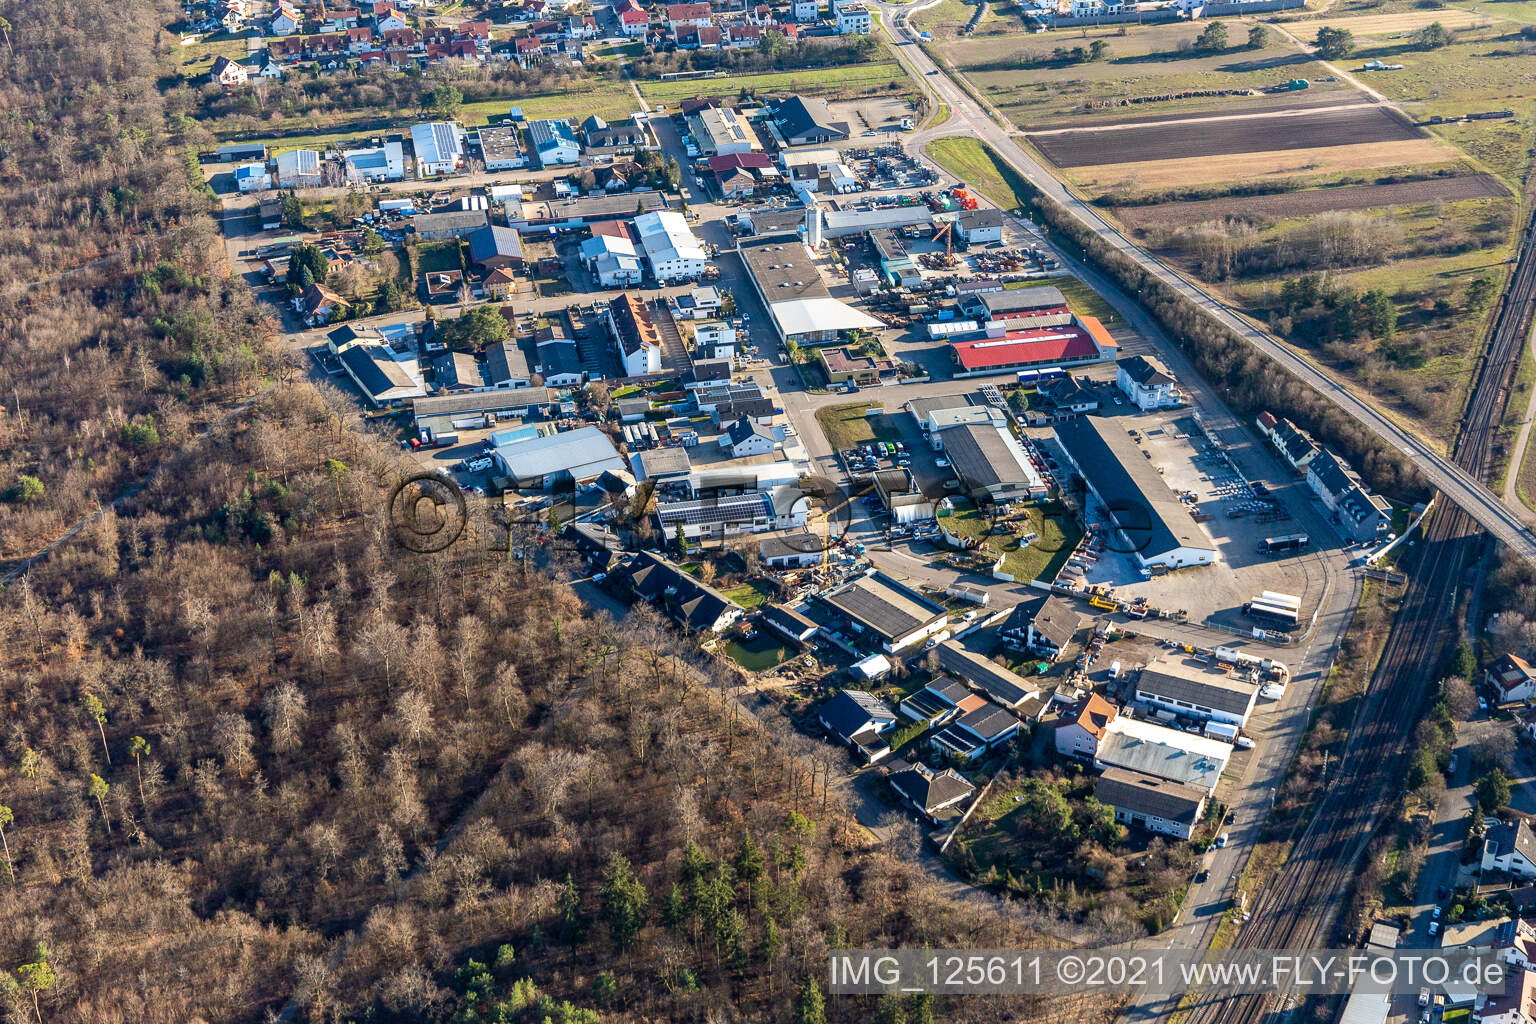 Vue aérienne de Zone industrielle à Waghäusel dans le département Bade-Wurtemberg, Allemagne